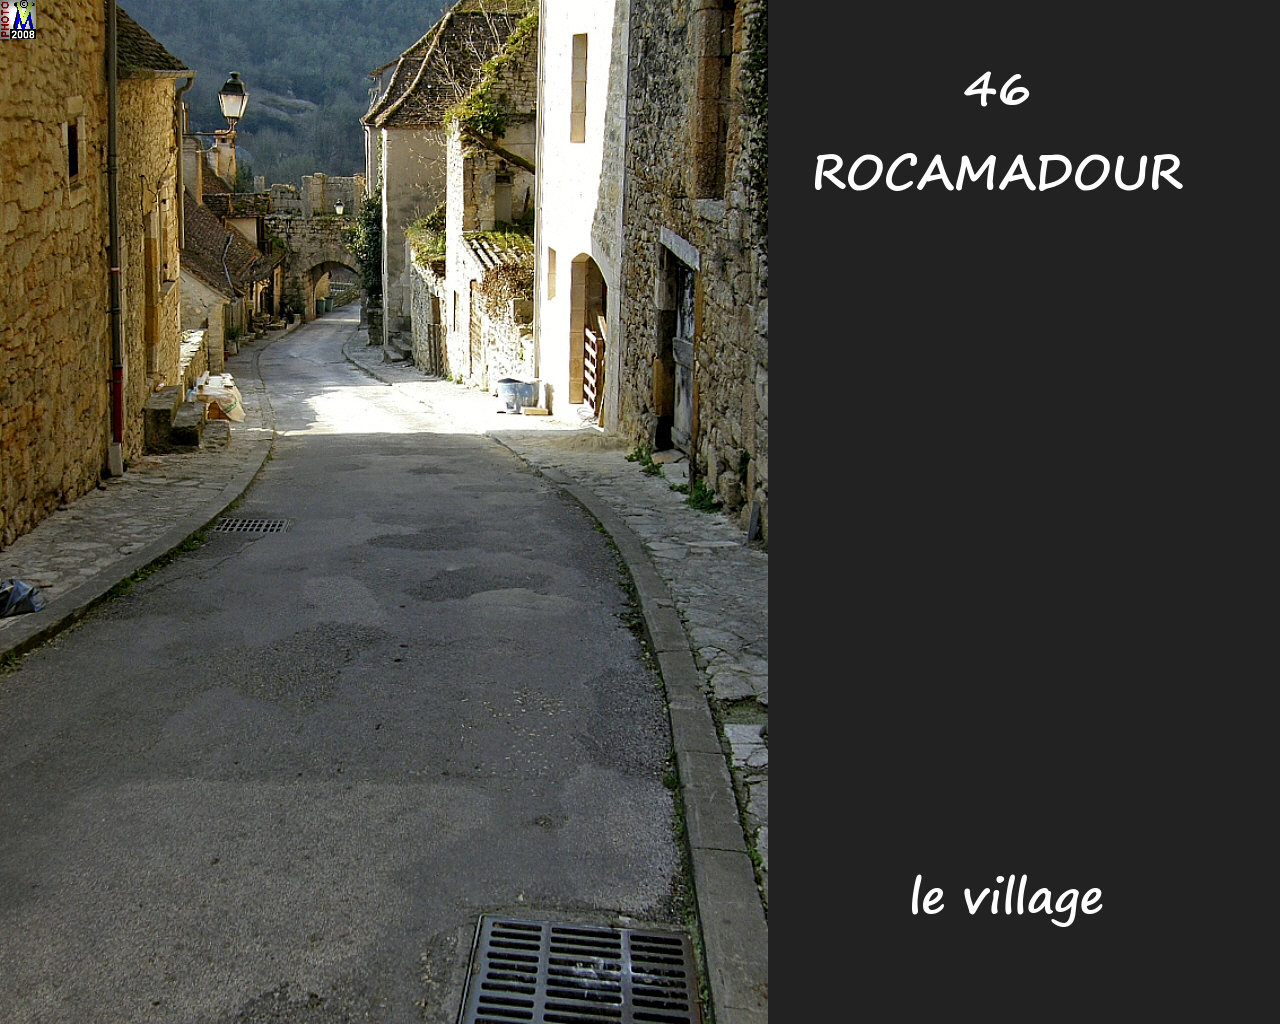 46ROCAMADOUR_village_130.jpg